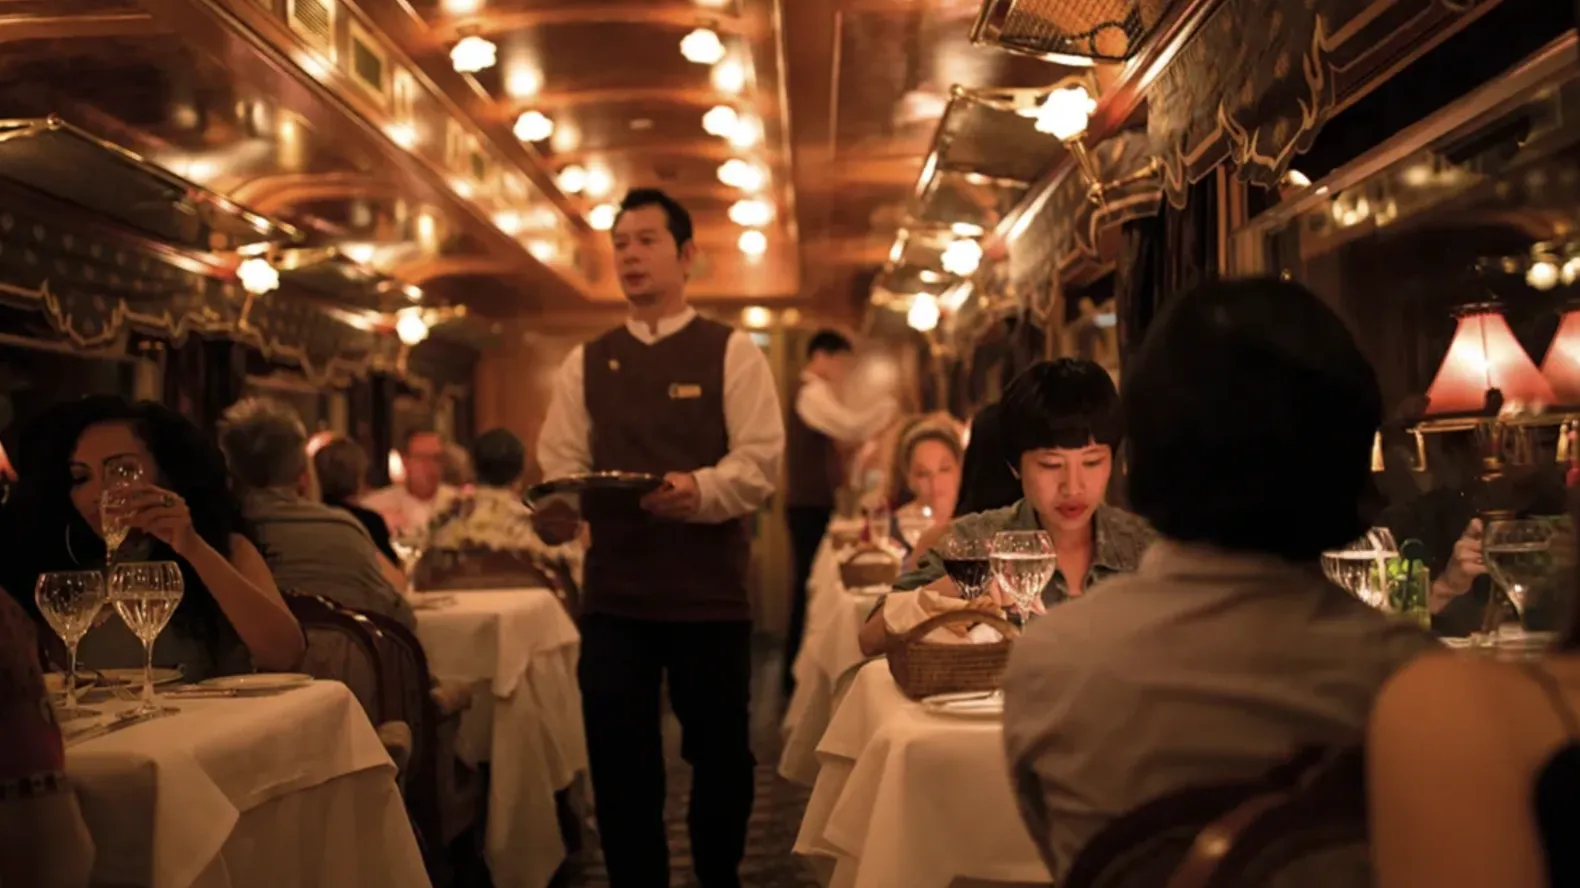 В поезде есть два вагона-ресторана, в каждом из которых подают изысканную кухню.